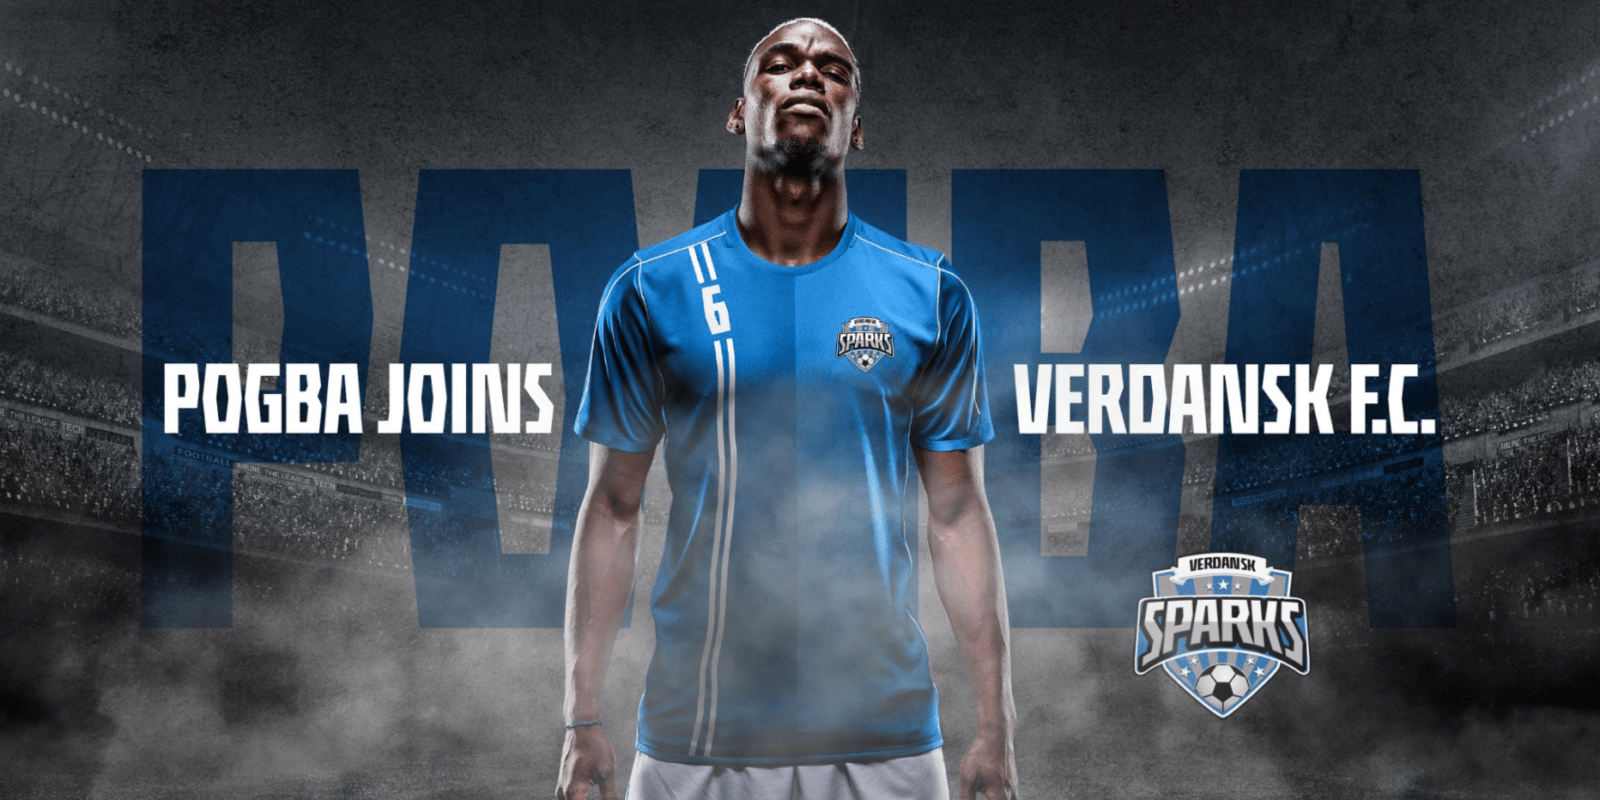 Paul Pogba Bergabung ke Verdansk FC, Penggemar MU Marah